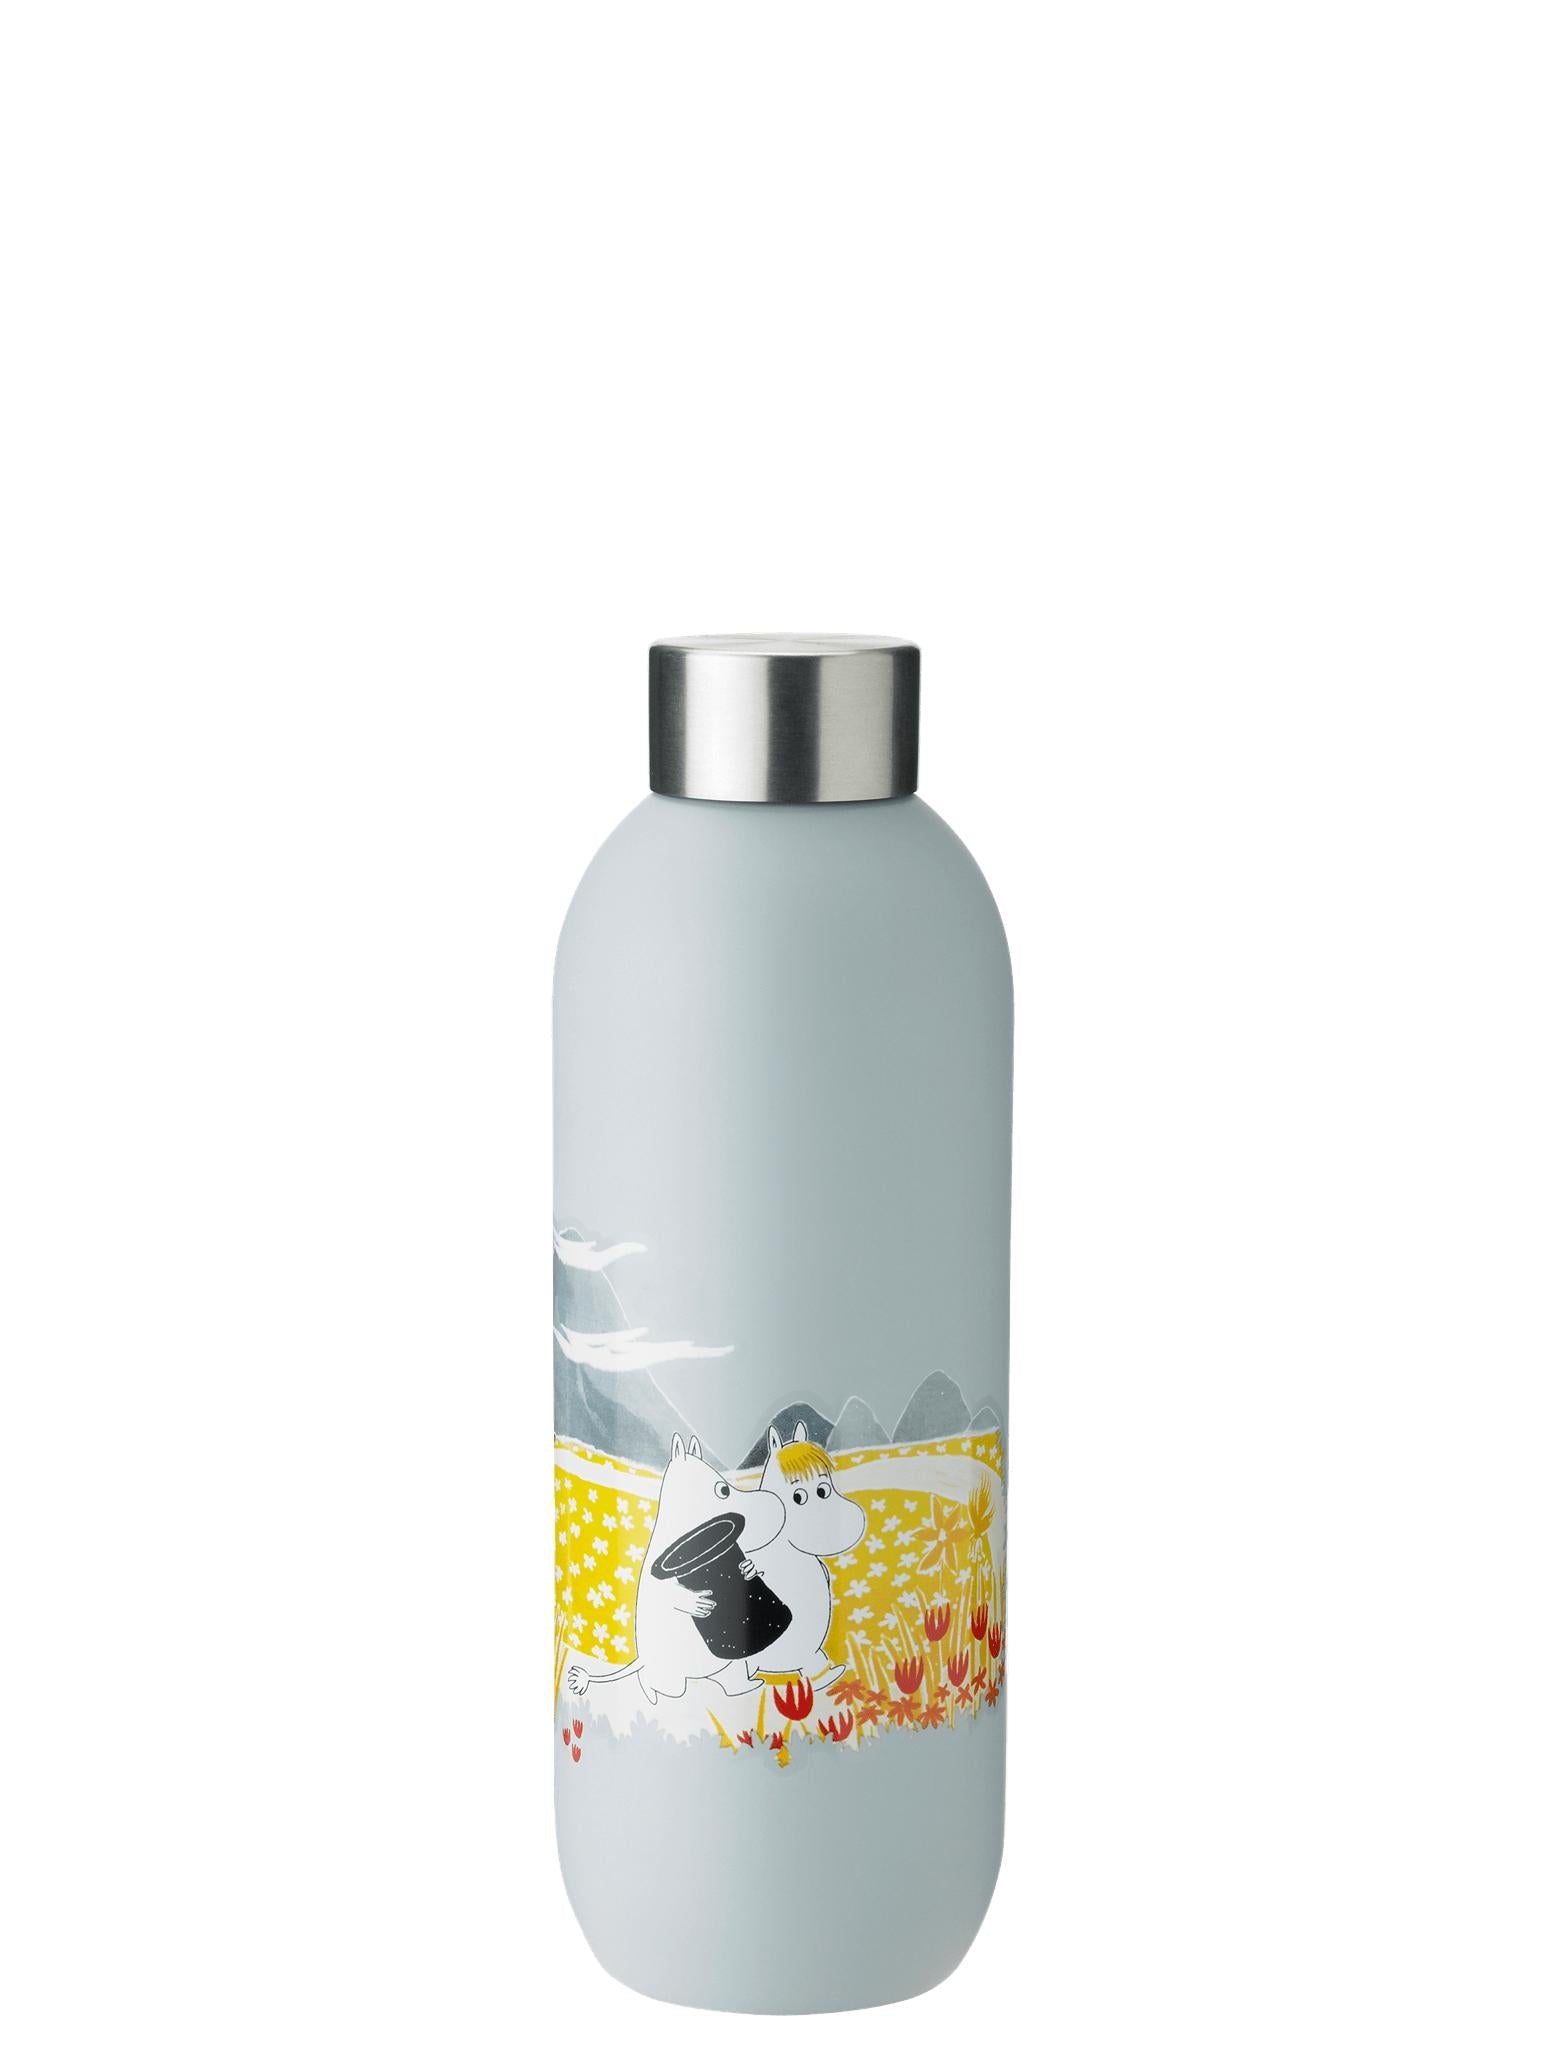 Stelton Udržujte lahvičku s vodou studenou vodou 0,75 l, měkká obloha Moomin